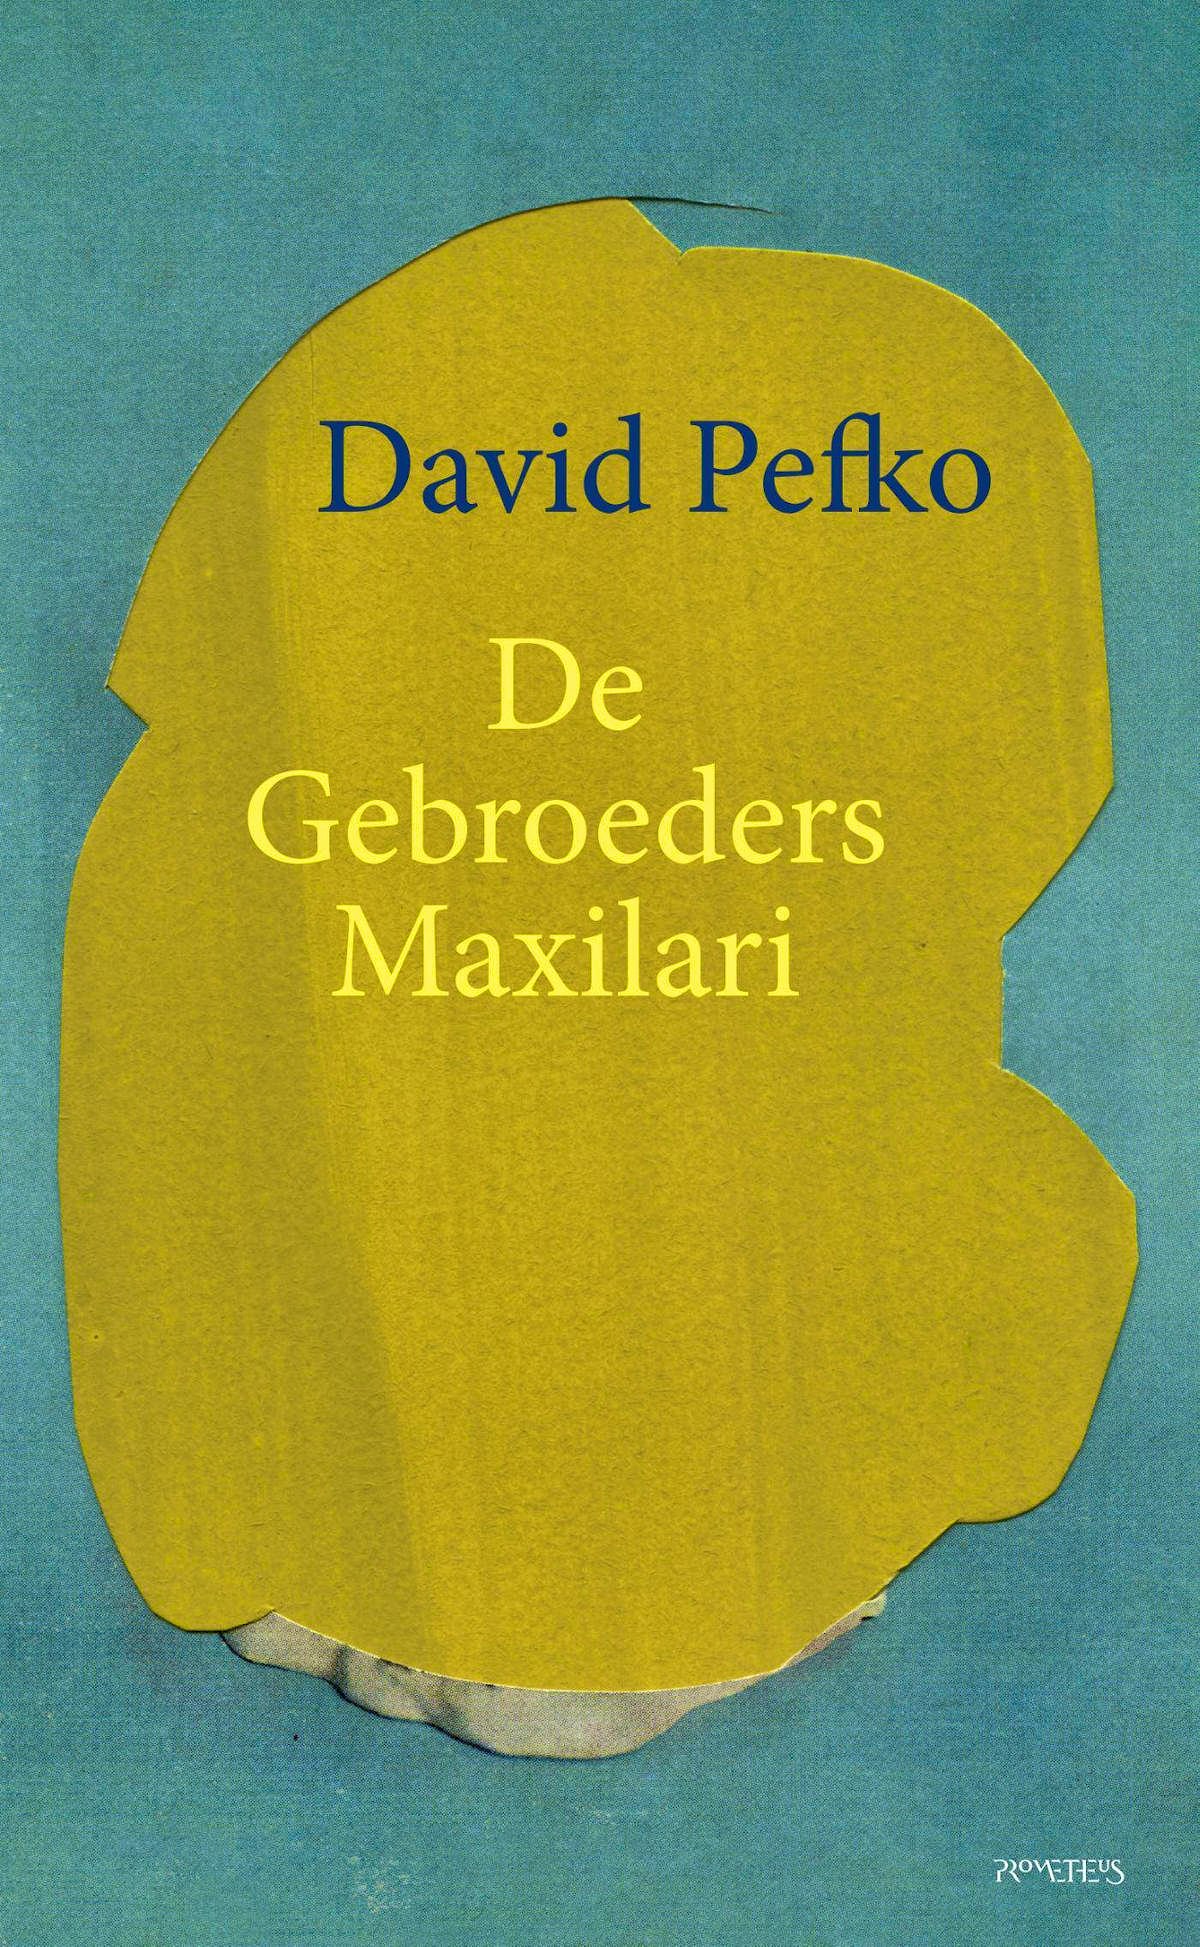 Bert Bakker in gesprek met David Pefko 